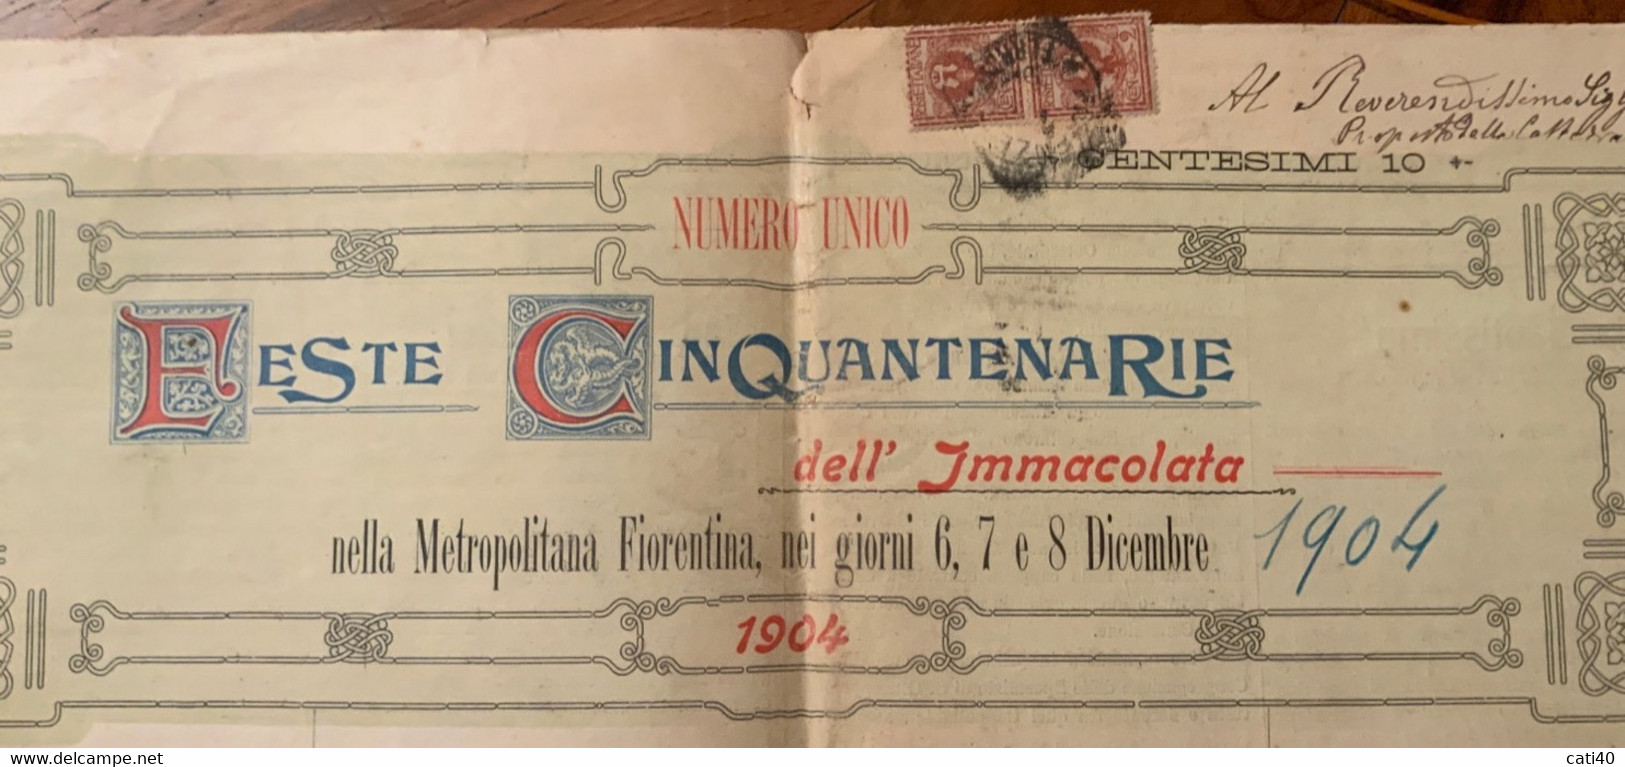 FESTE CINQUANTENARIE DELL’IMMACOLATA NELLA METROPOLITANA FIORENTINA 6-7-8DICEMBRE 1904 - First Editions